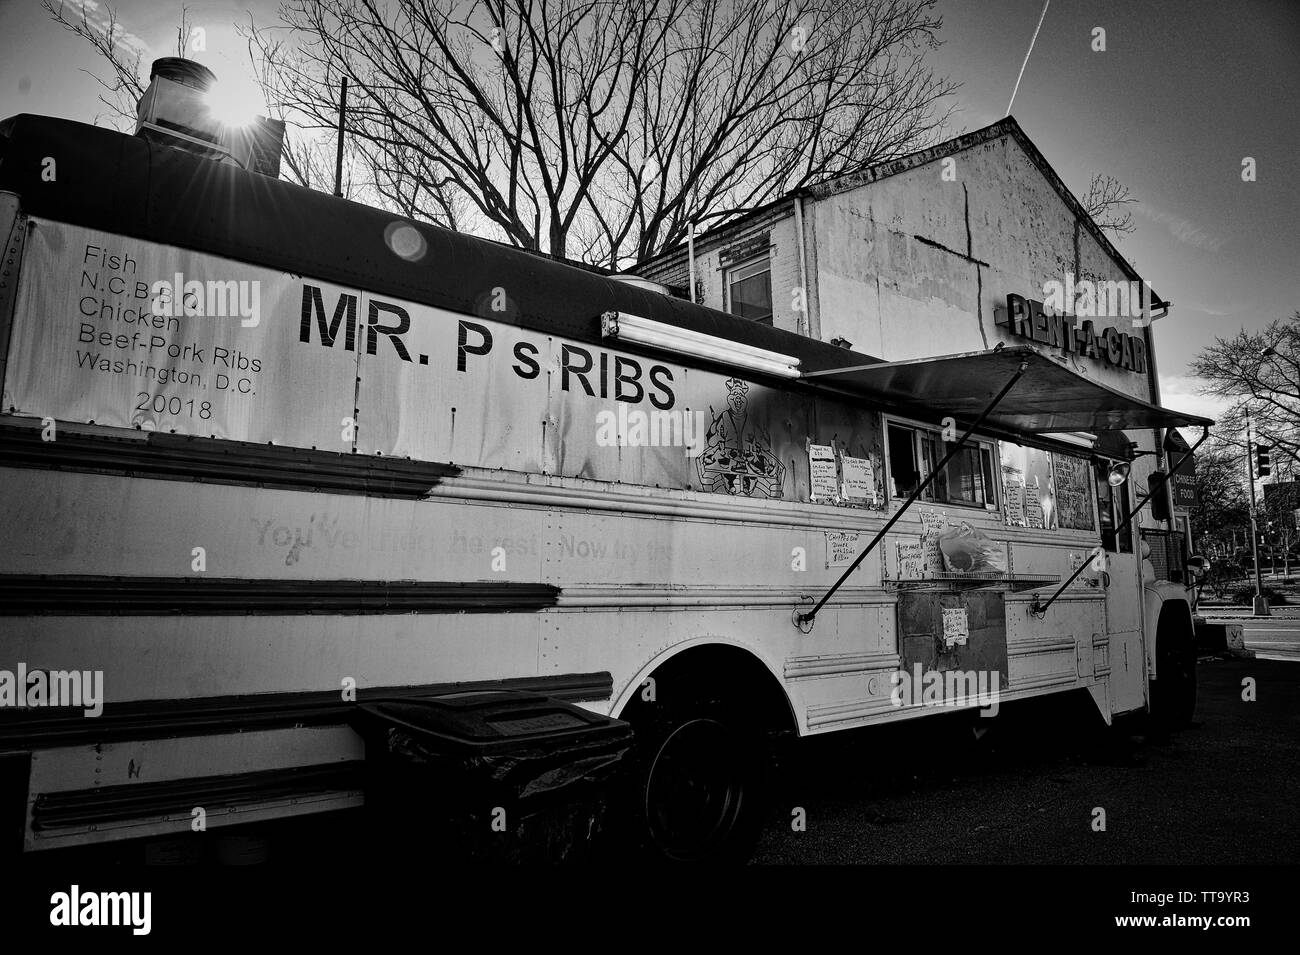 Stati Uniti - Dic 13: il sig. P nervature del bus in Washington, D.C. su dicembre 13, 2013. Il BBQ hotspot in in un vecchio autobus convertito in una gabbia di BB Foto Stock